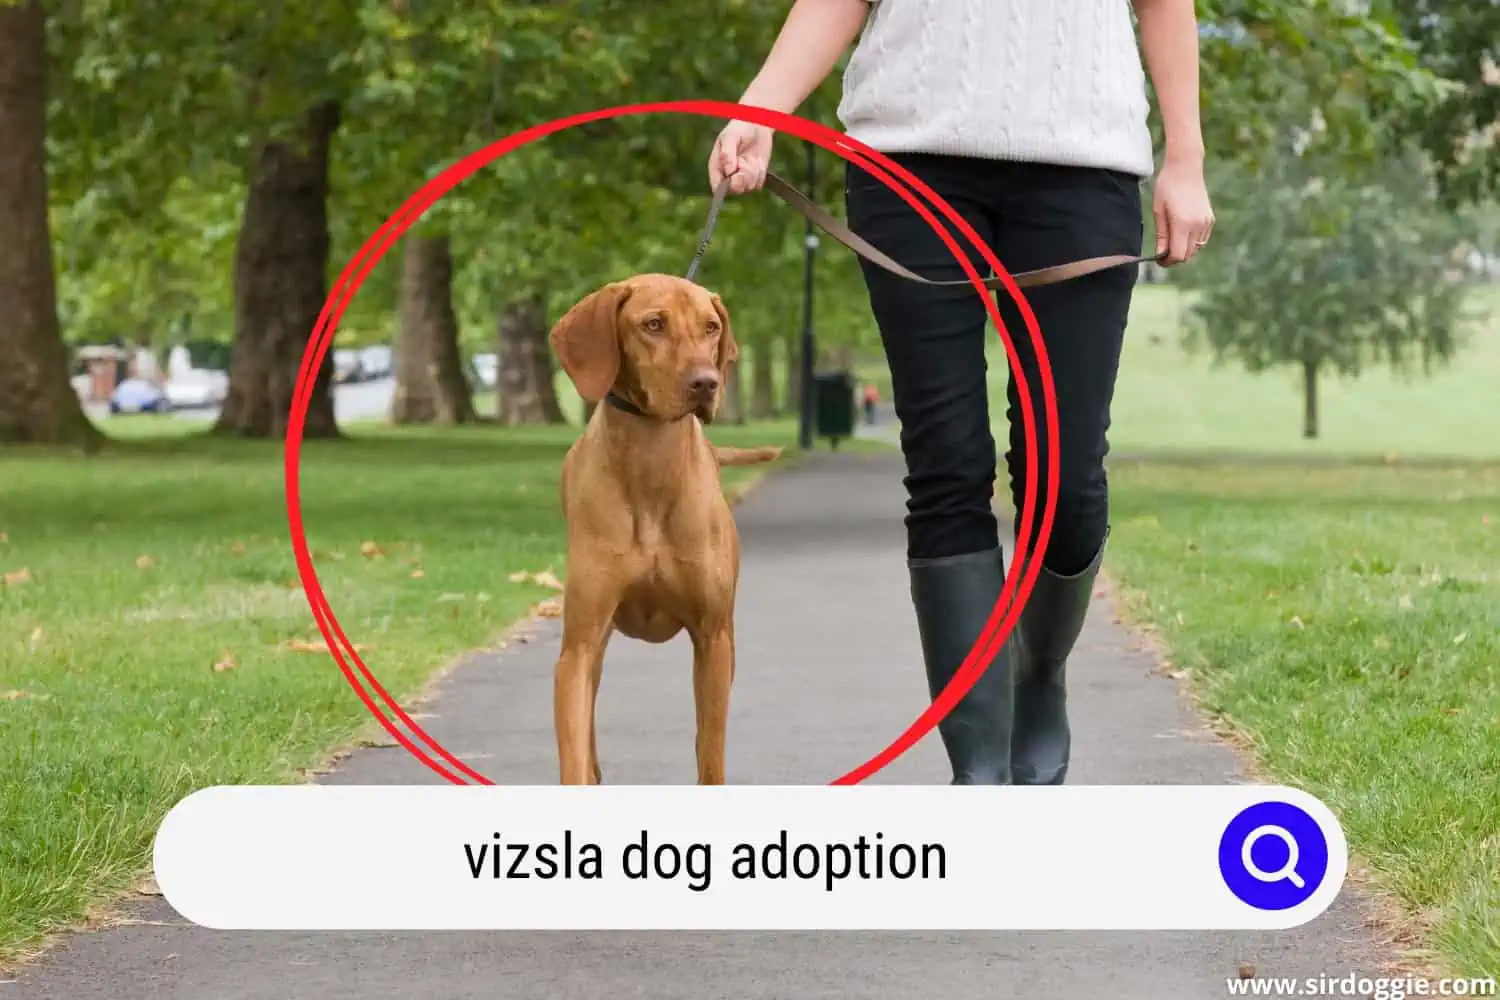 Adopted Vizsla dog walking together with owner